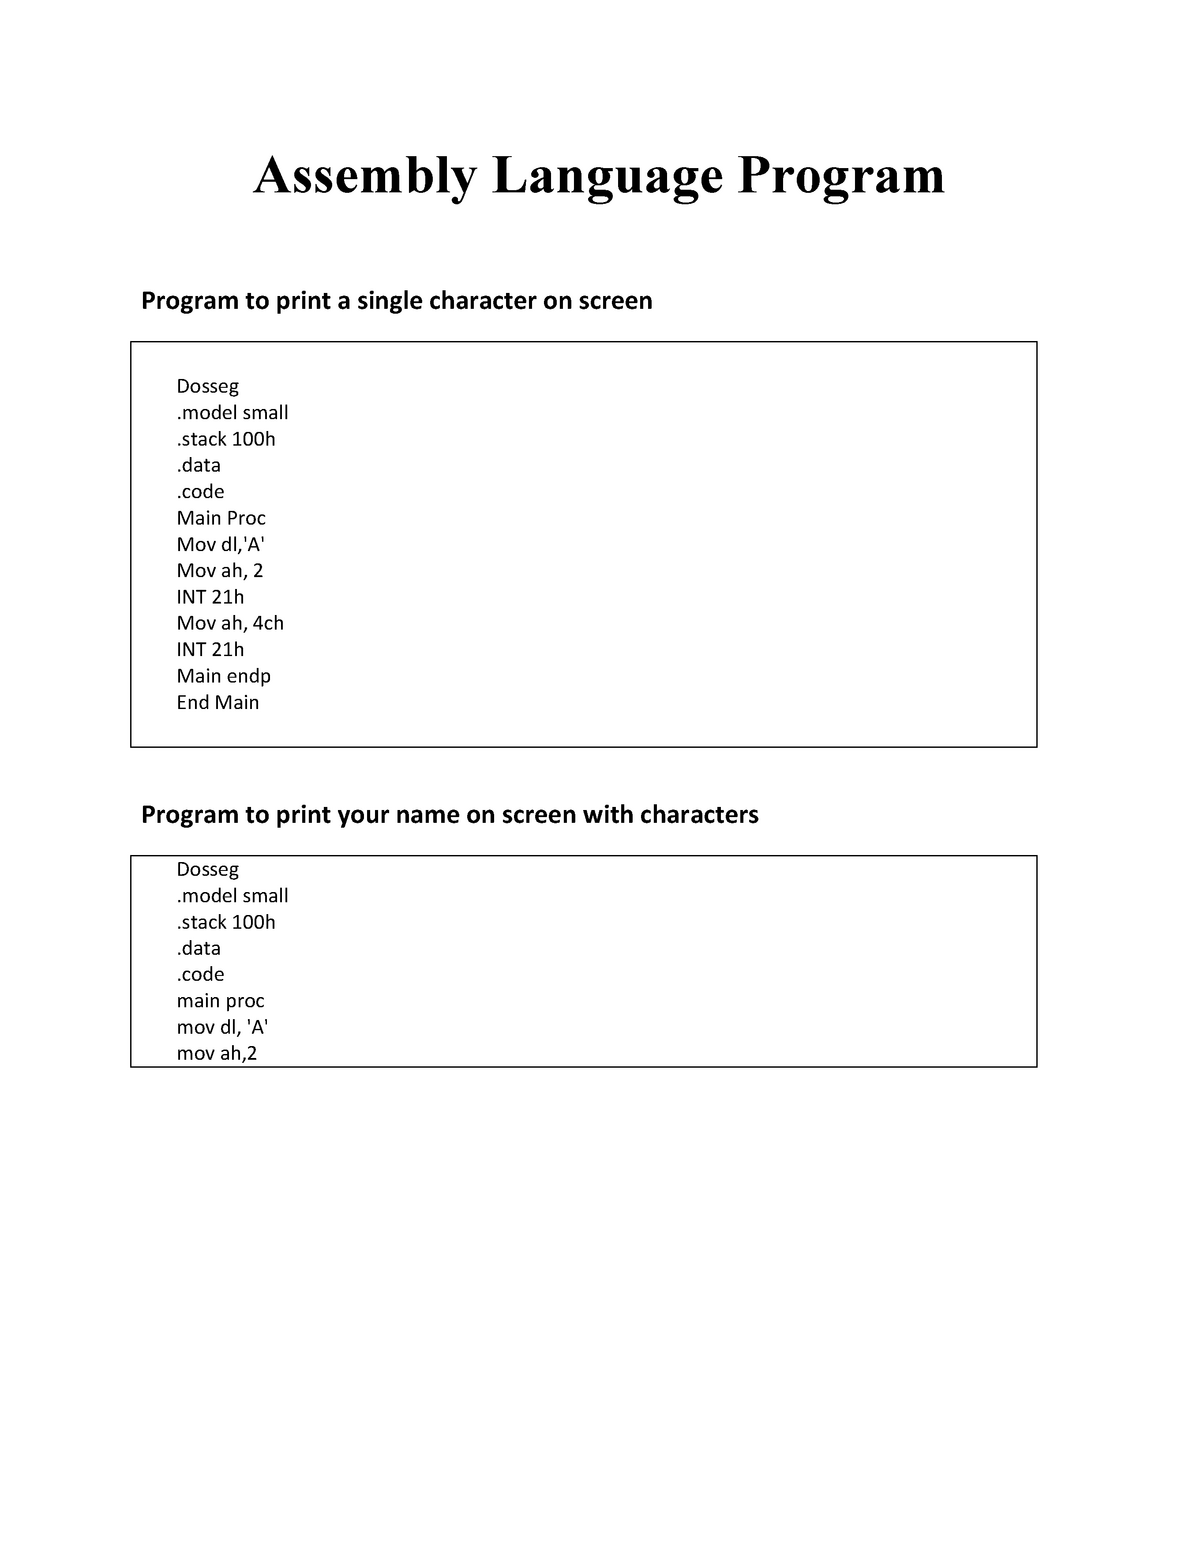 all-assembly-programs-study-assembly-language-program-program-to